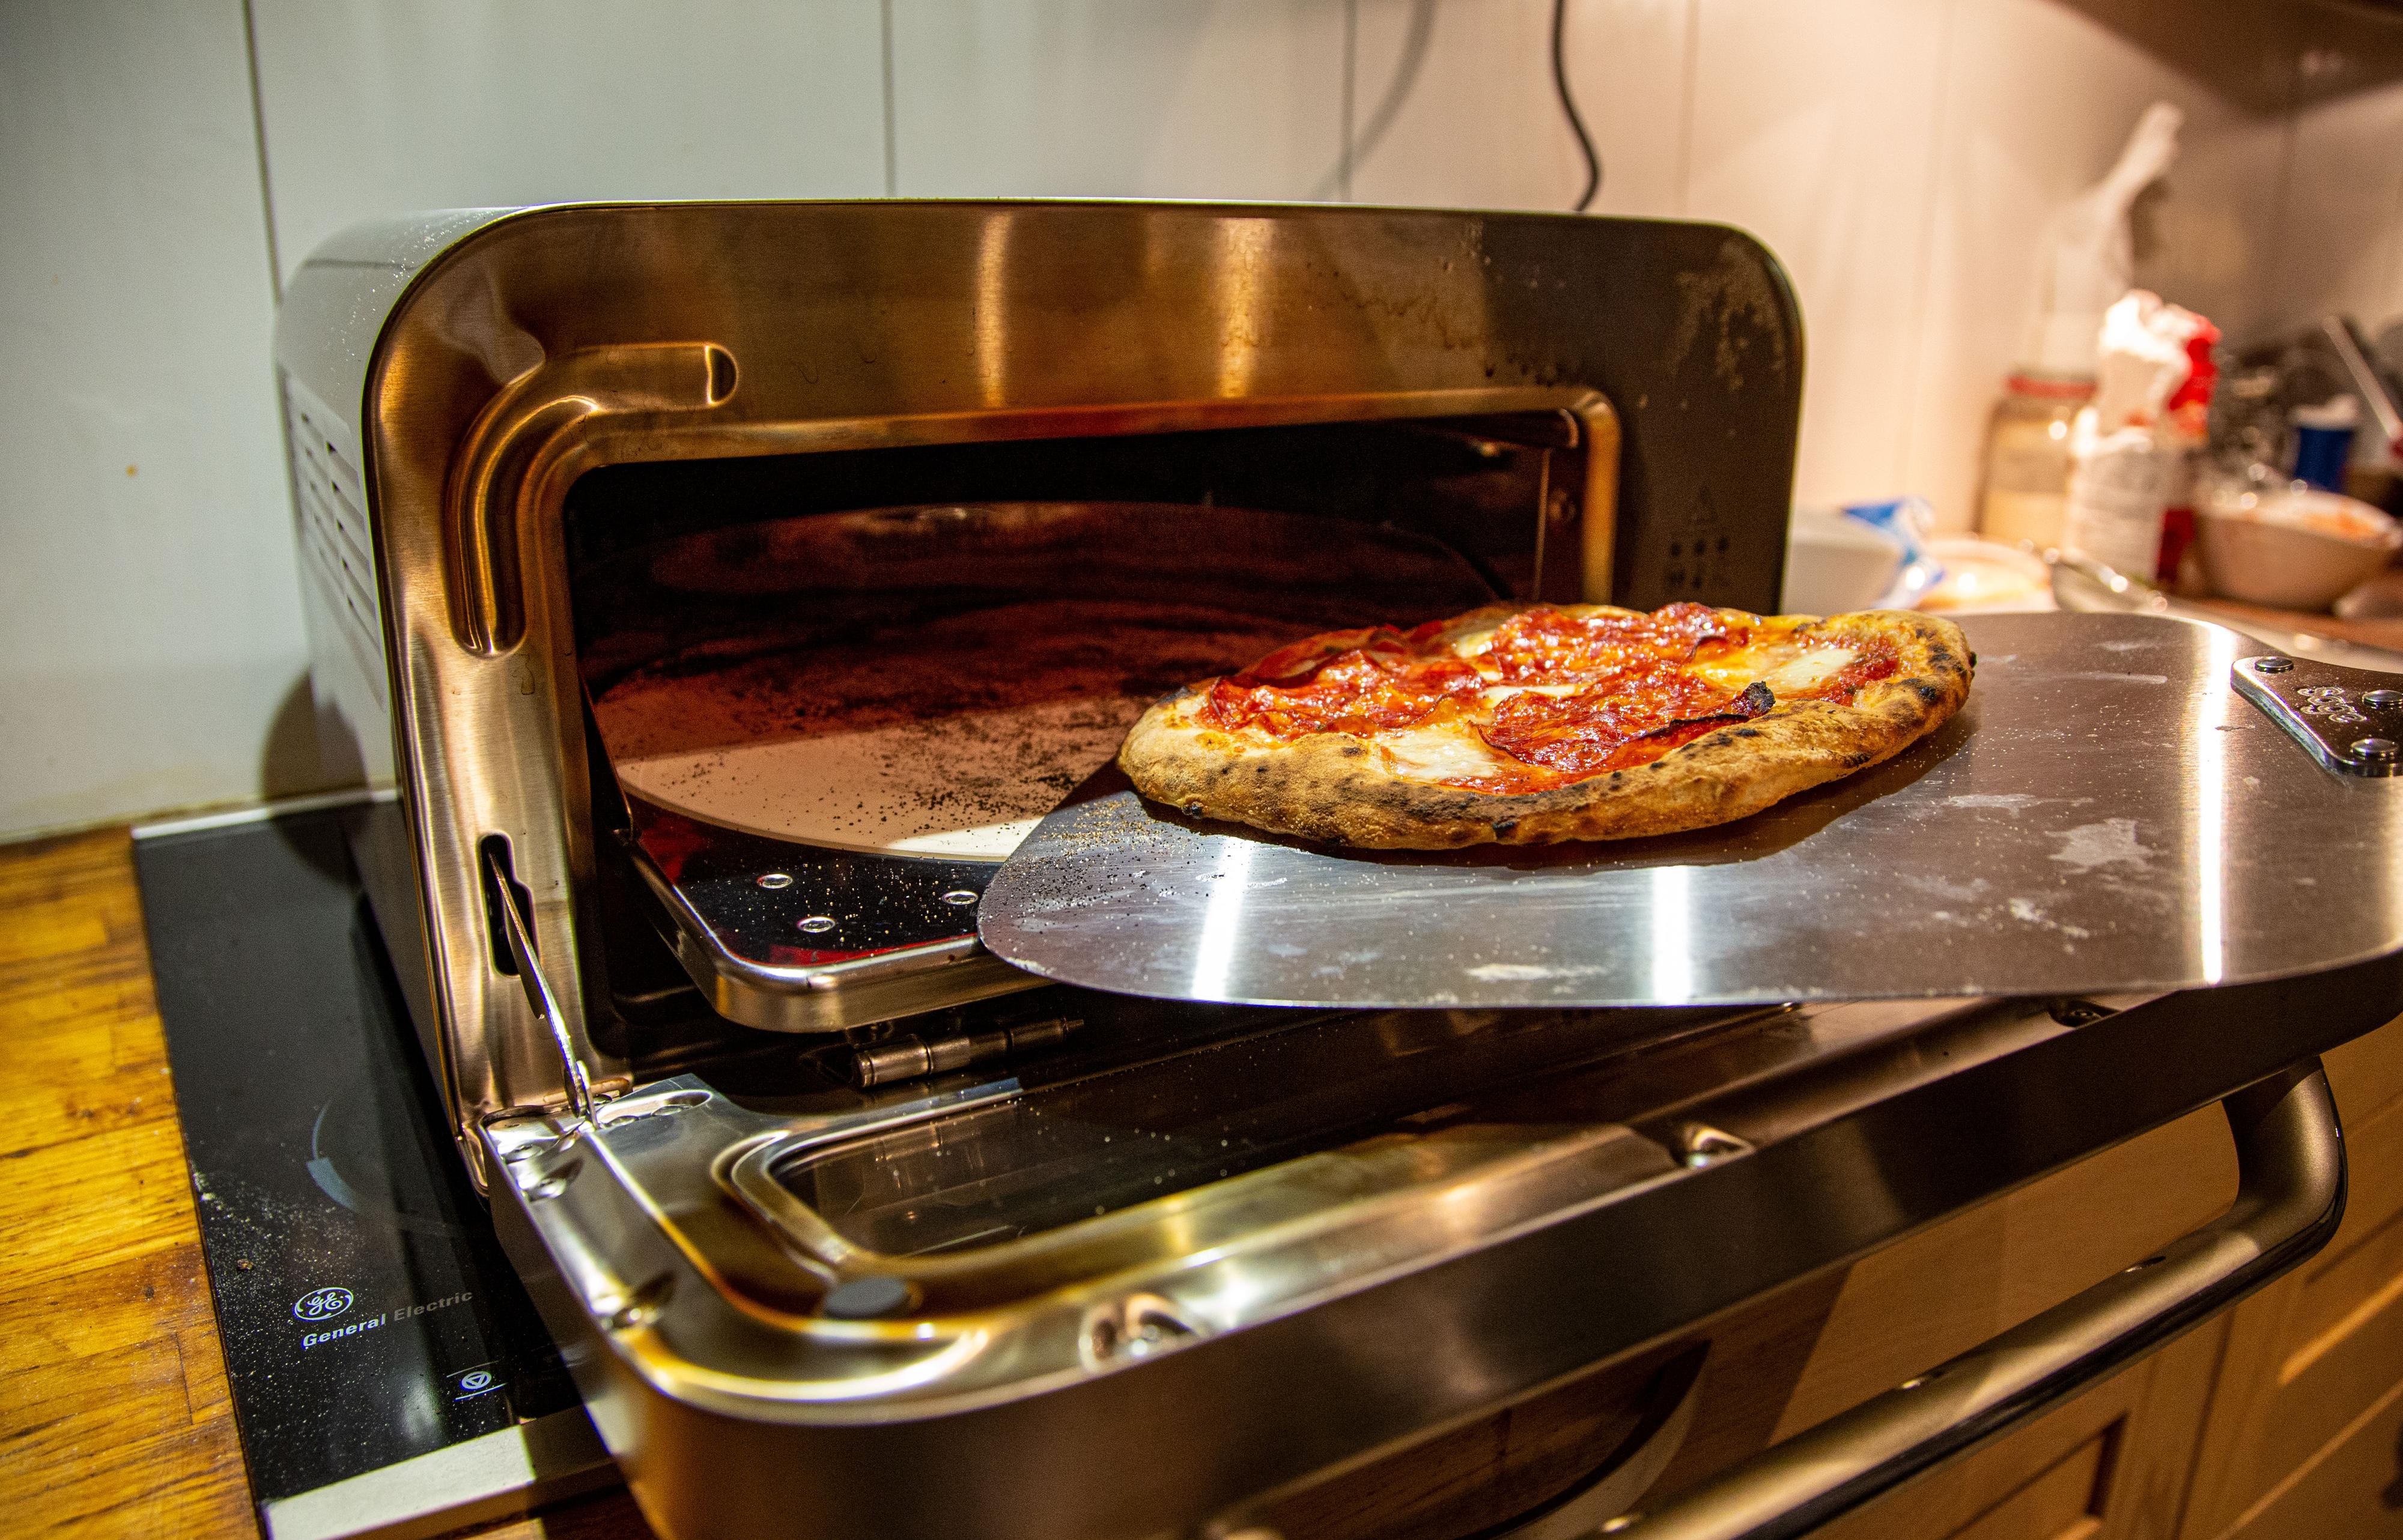 Det finnes verre produkter å teste enn en pizzaovn. 